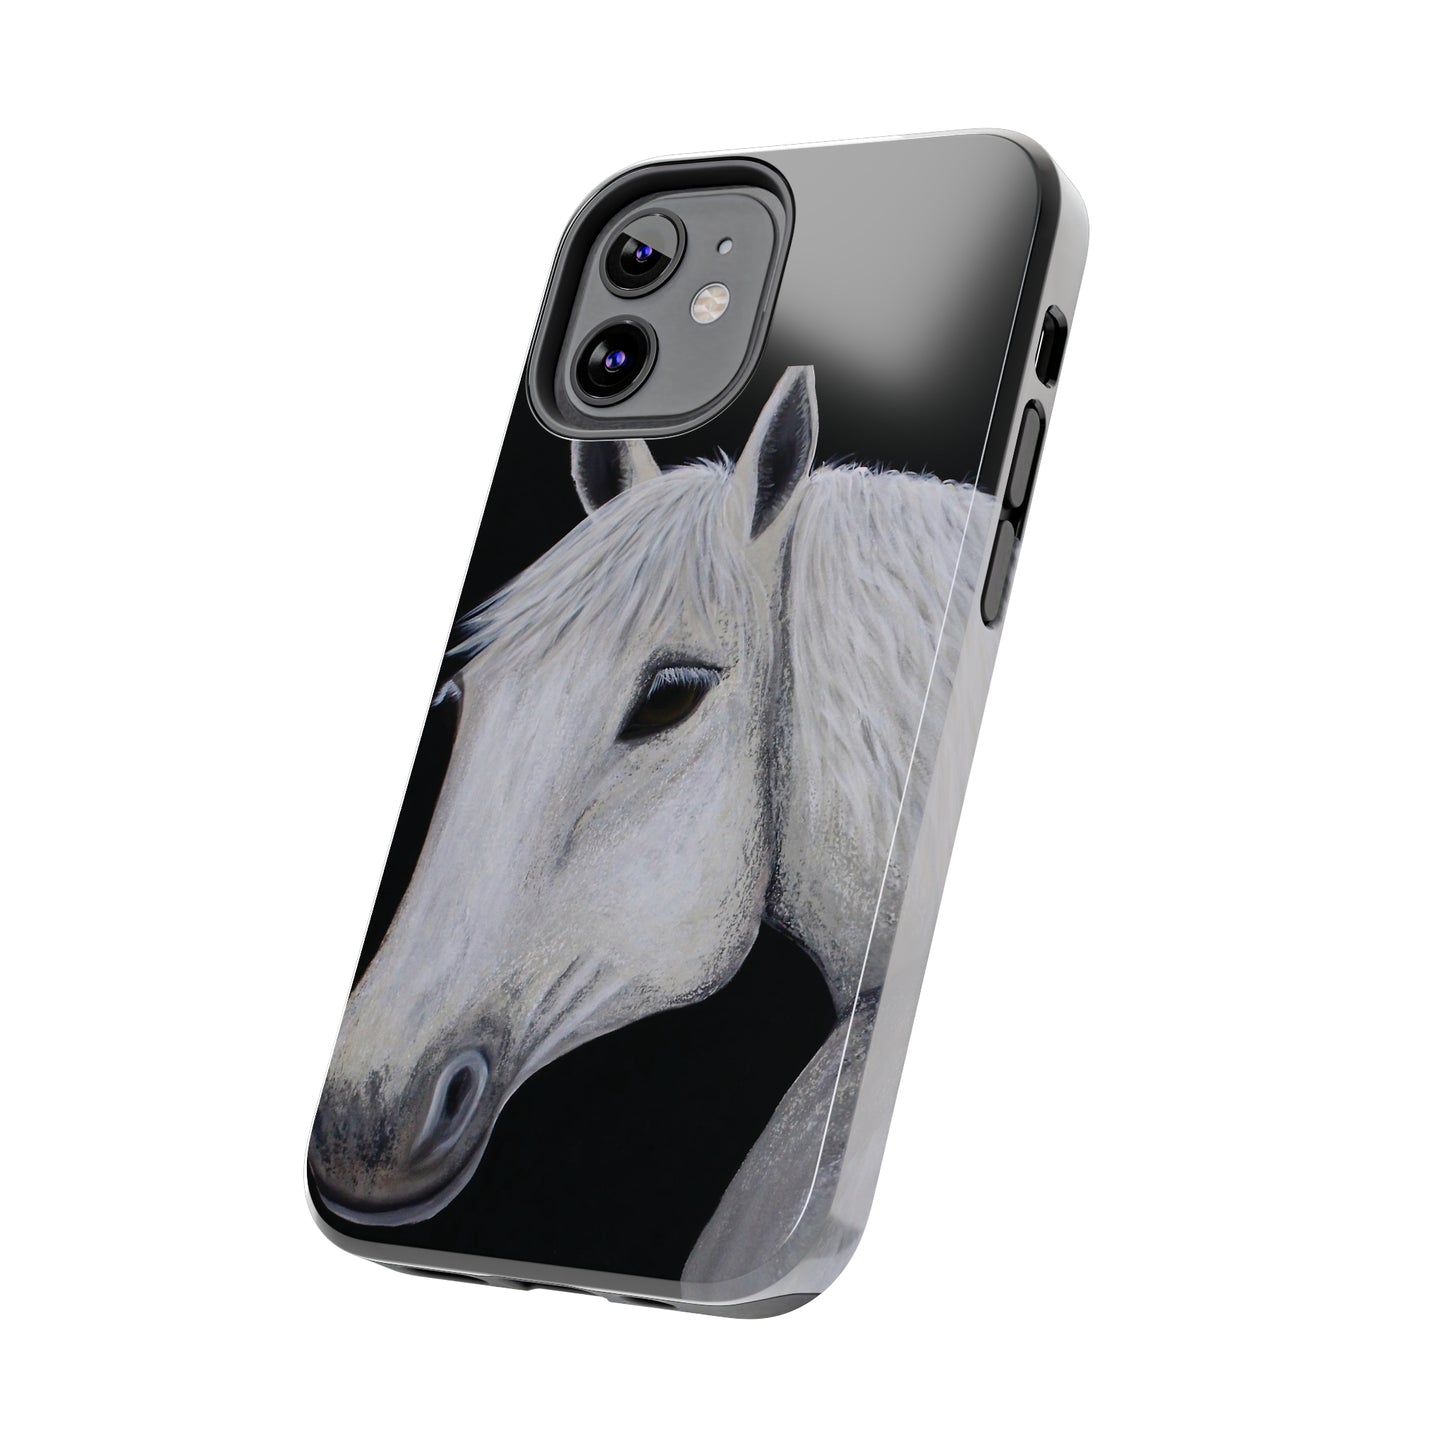 Tough Phone Case - Original art phone case - Slim phone case - Equestrian Art phone case - Ghost Horse Phone case